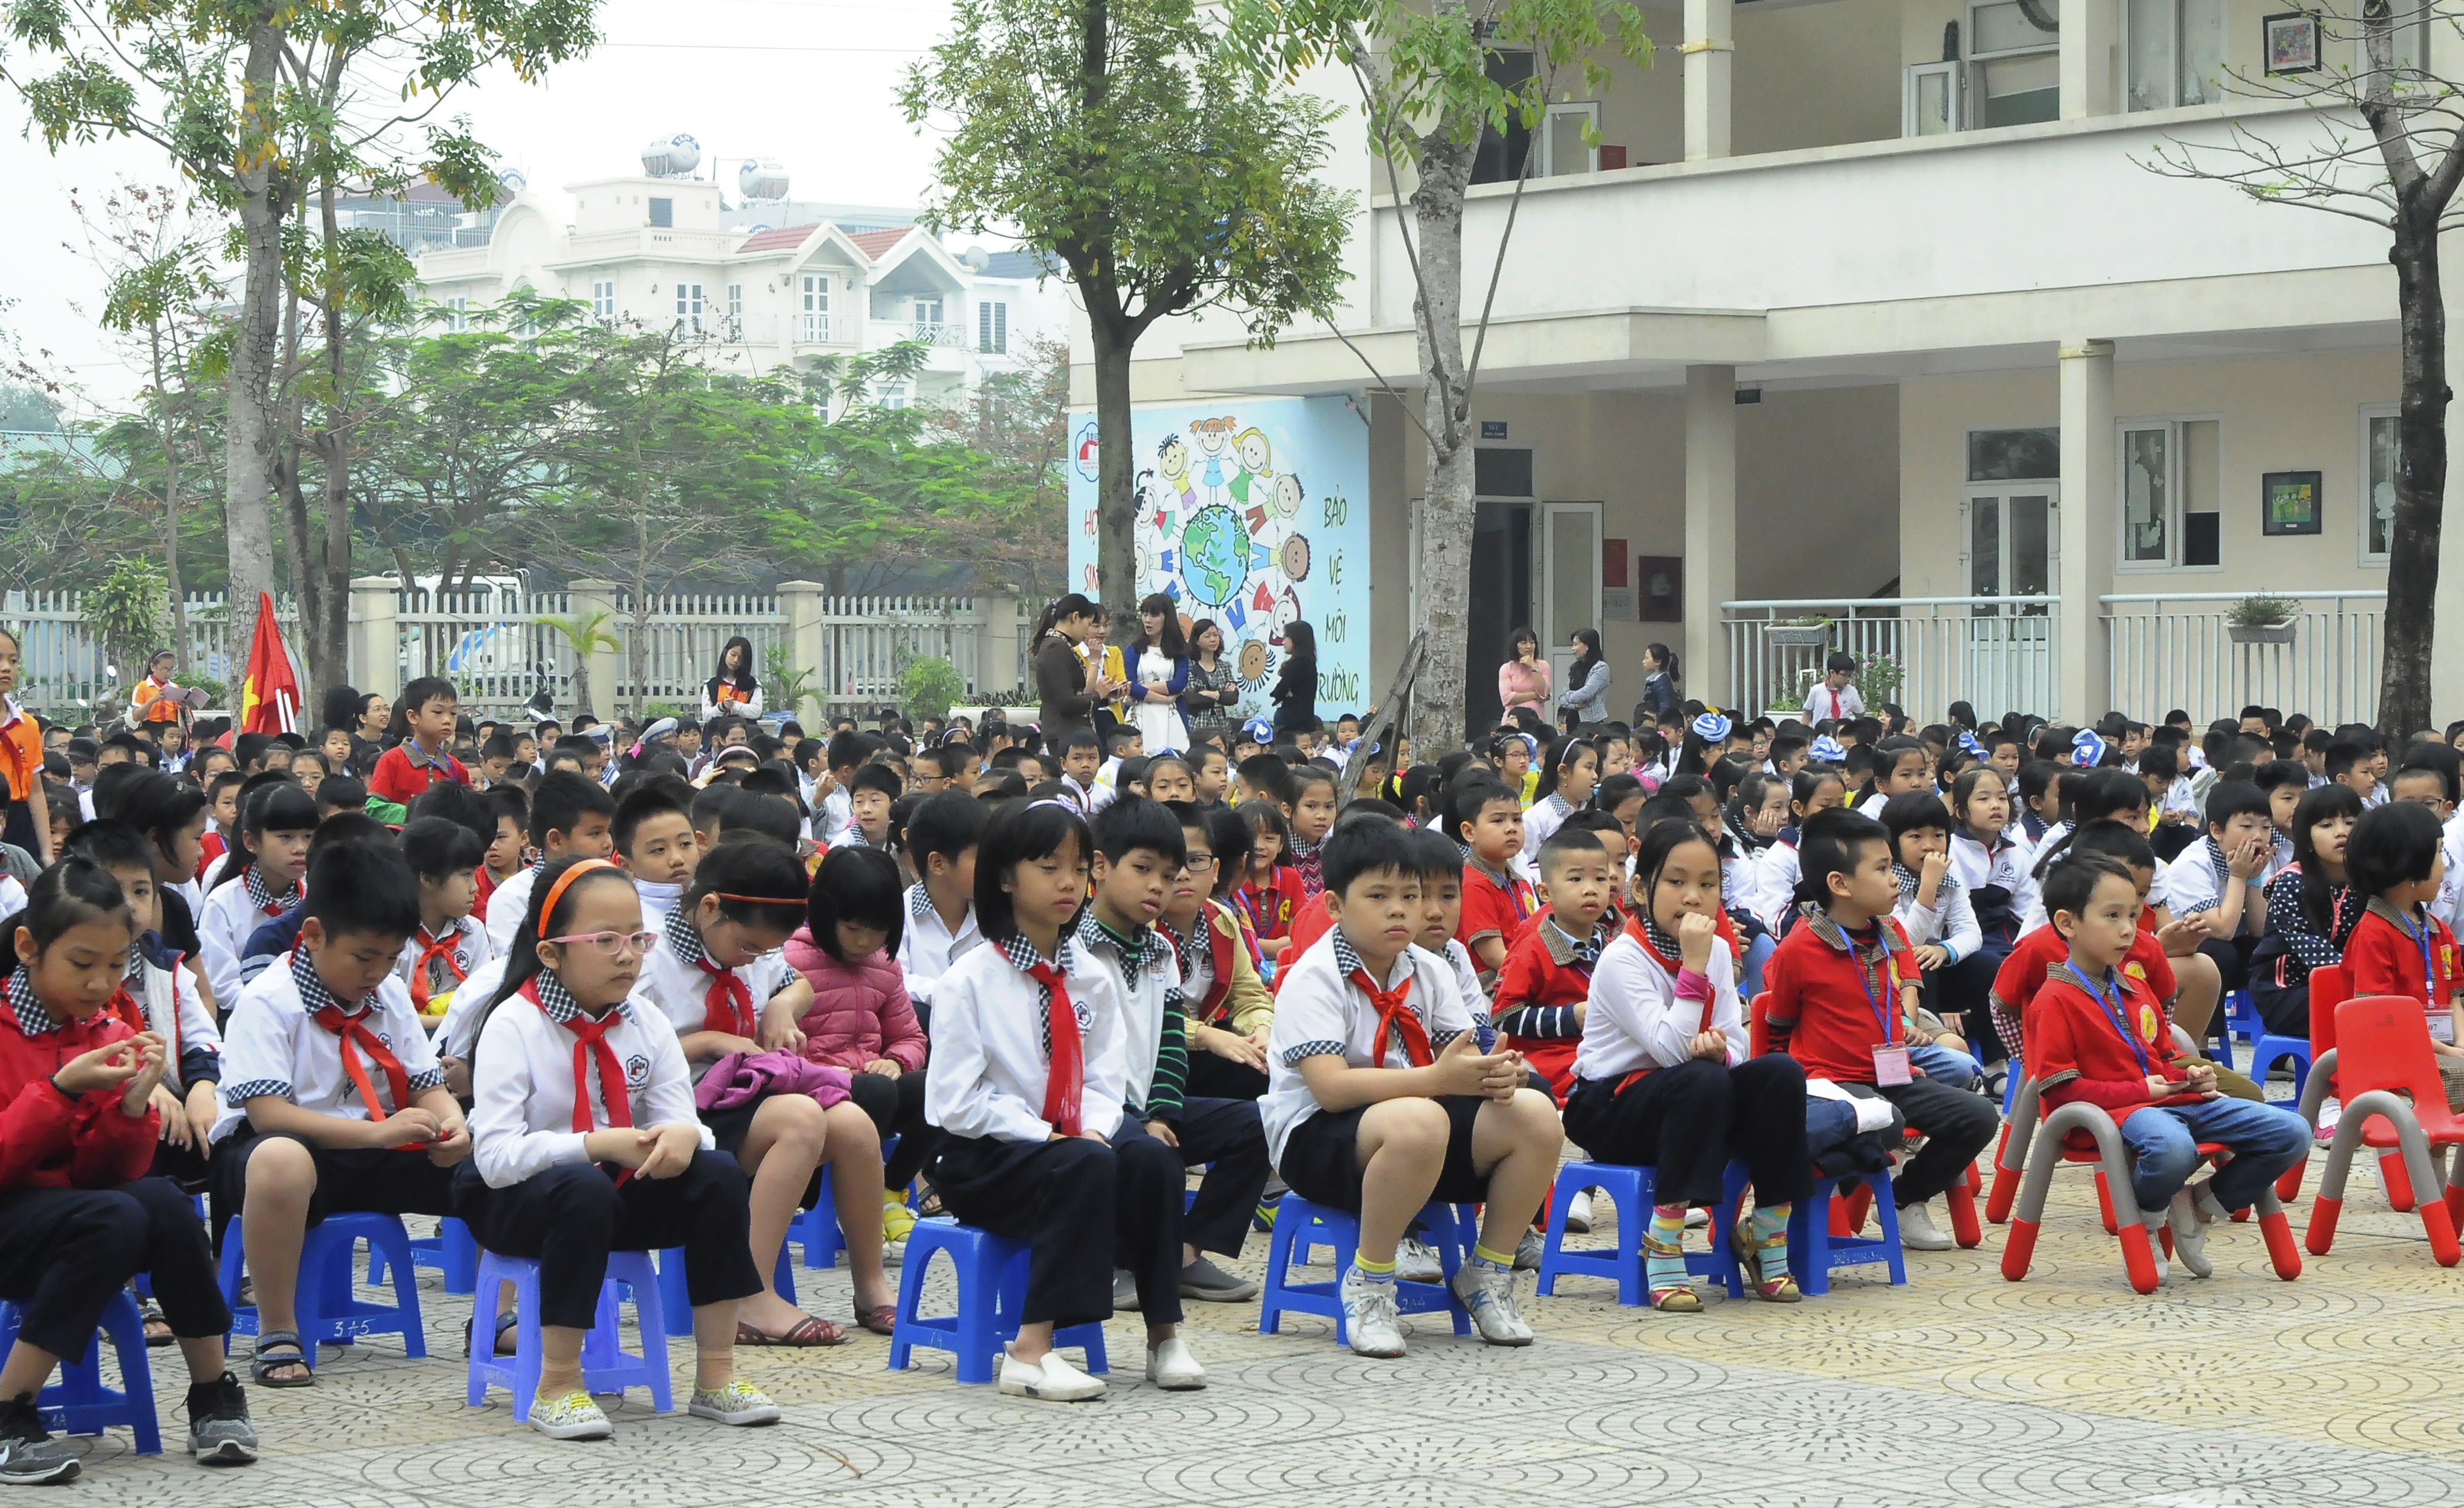 Khối mẫu giáo lớn giao lưu tại trường tiểu học Đô thị Việt hưng (17).jpg